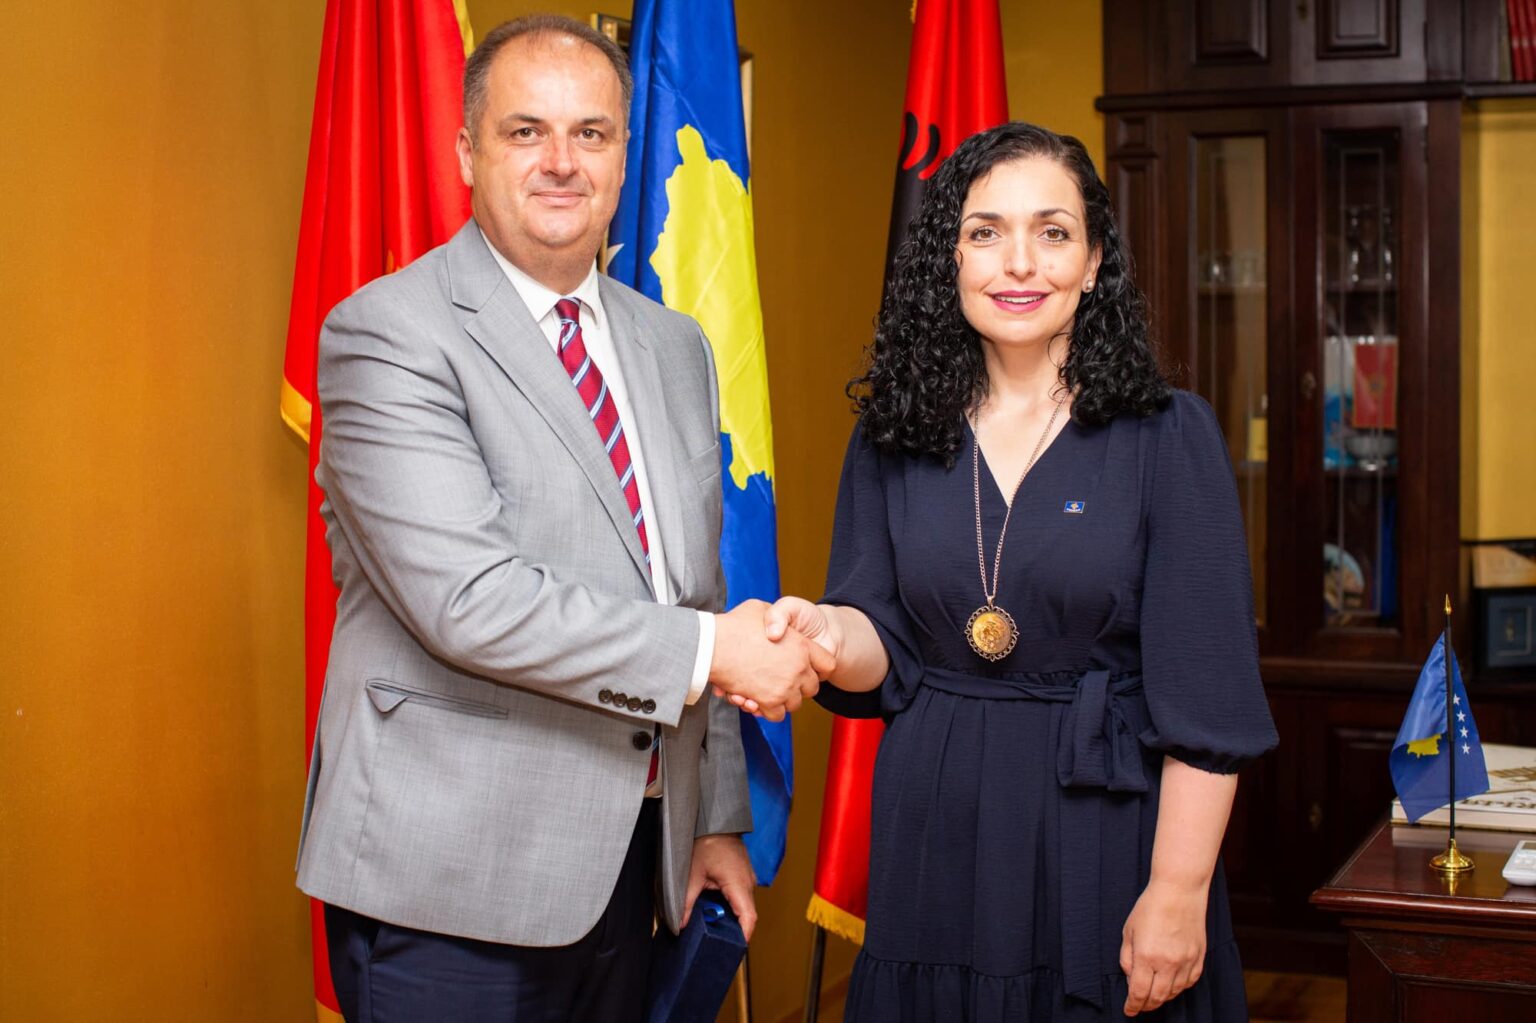 Vizita e Osmanit në Ulqin, reagon Qeveria e Malit të Zi: S’kemi çështje të hapura me Kosovën